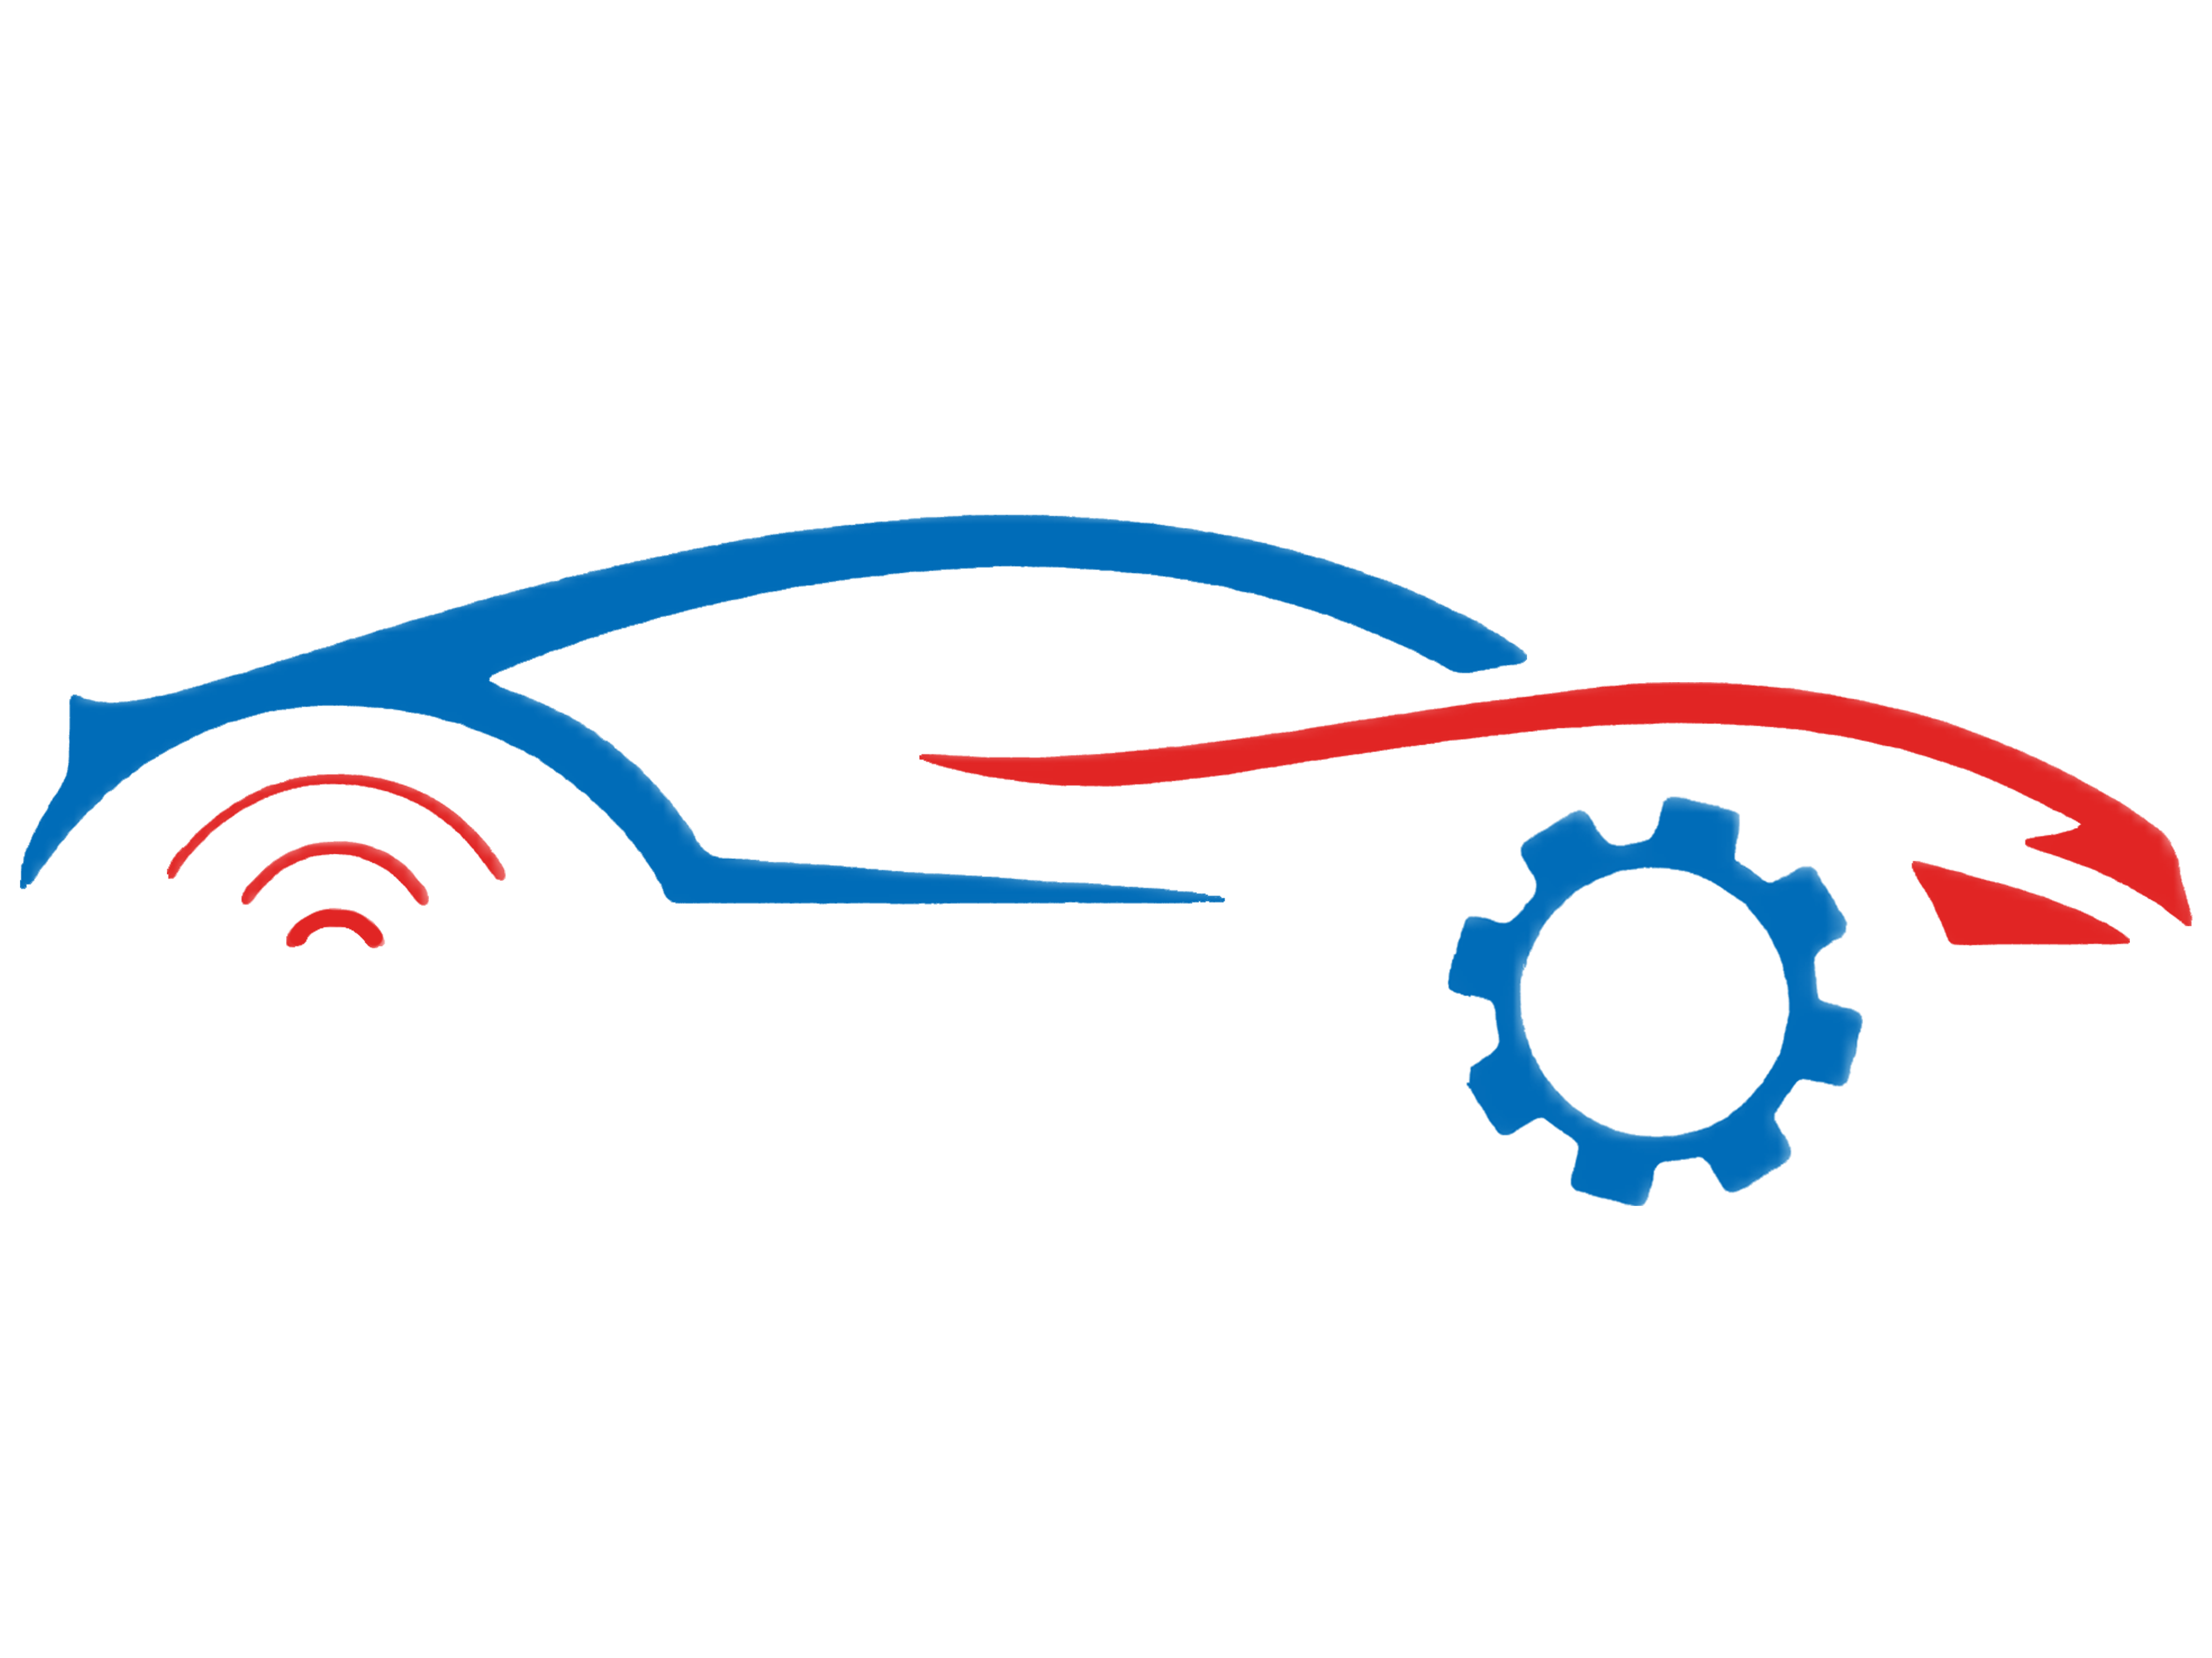 Mobile Car Repair Qatar